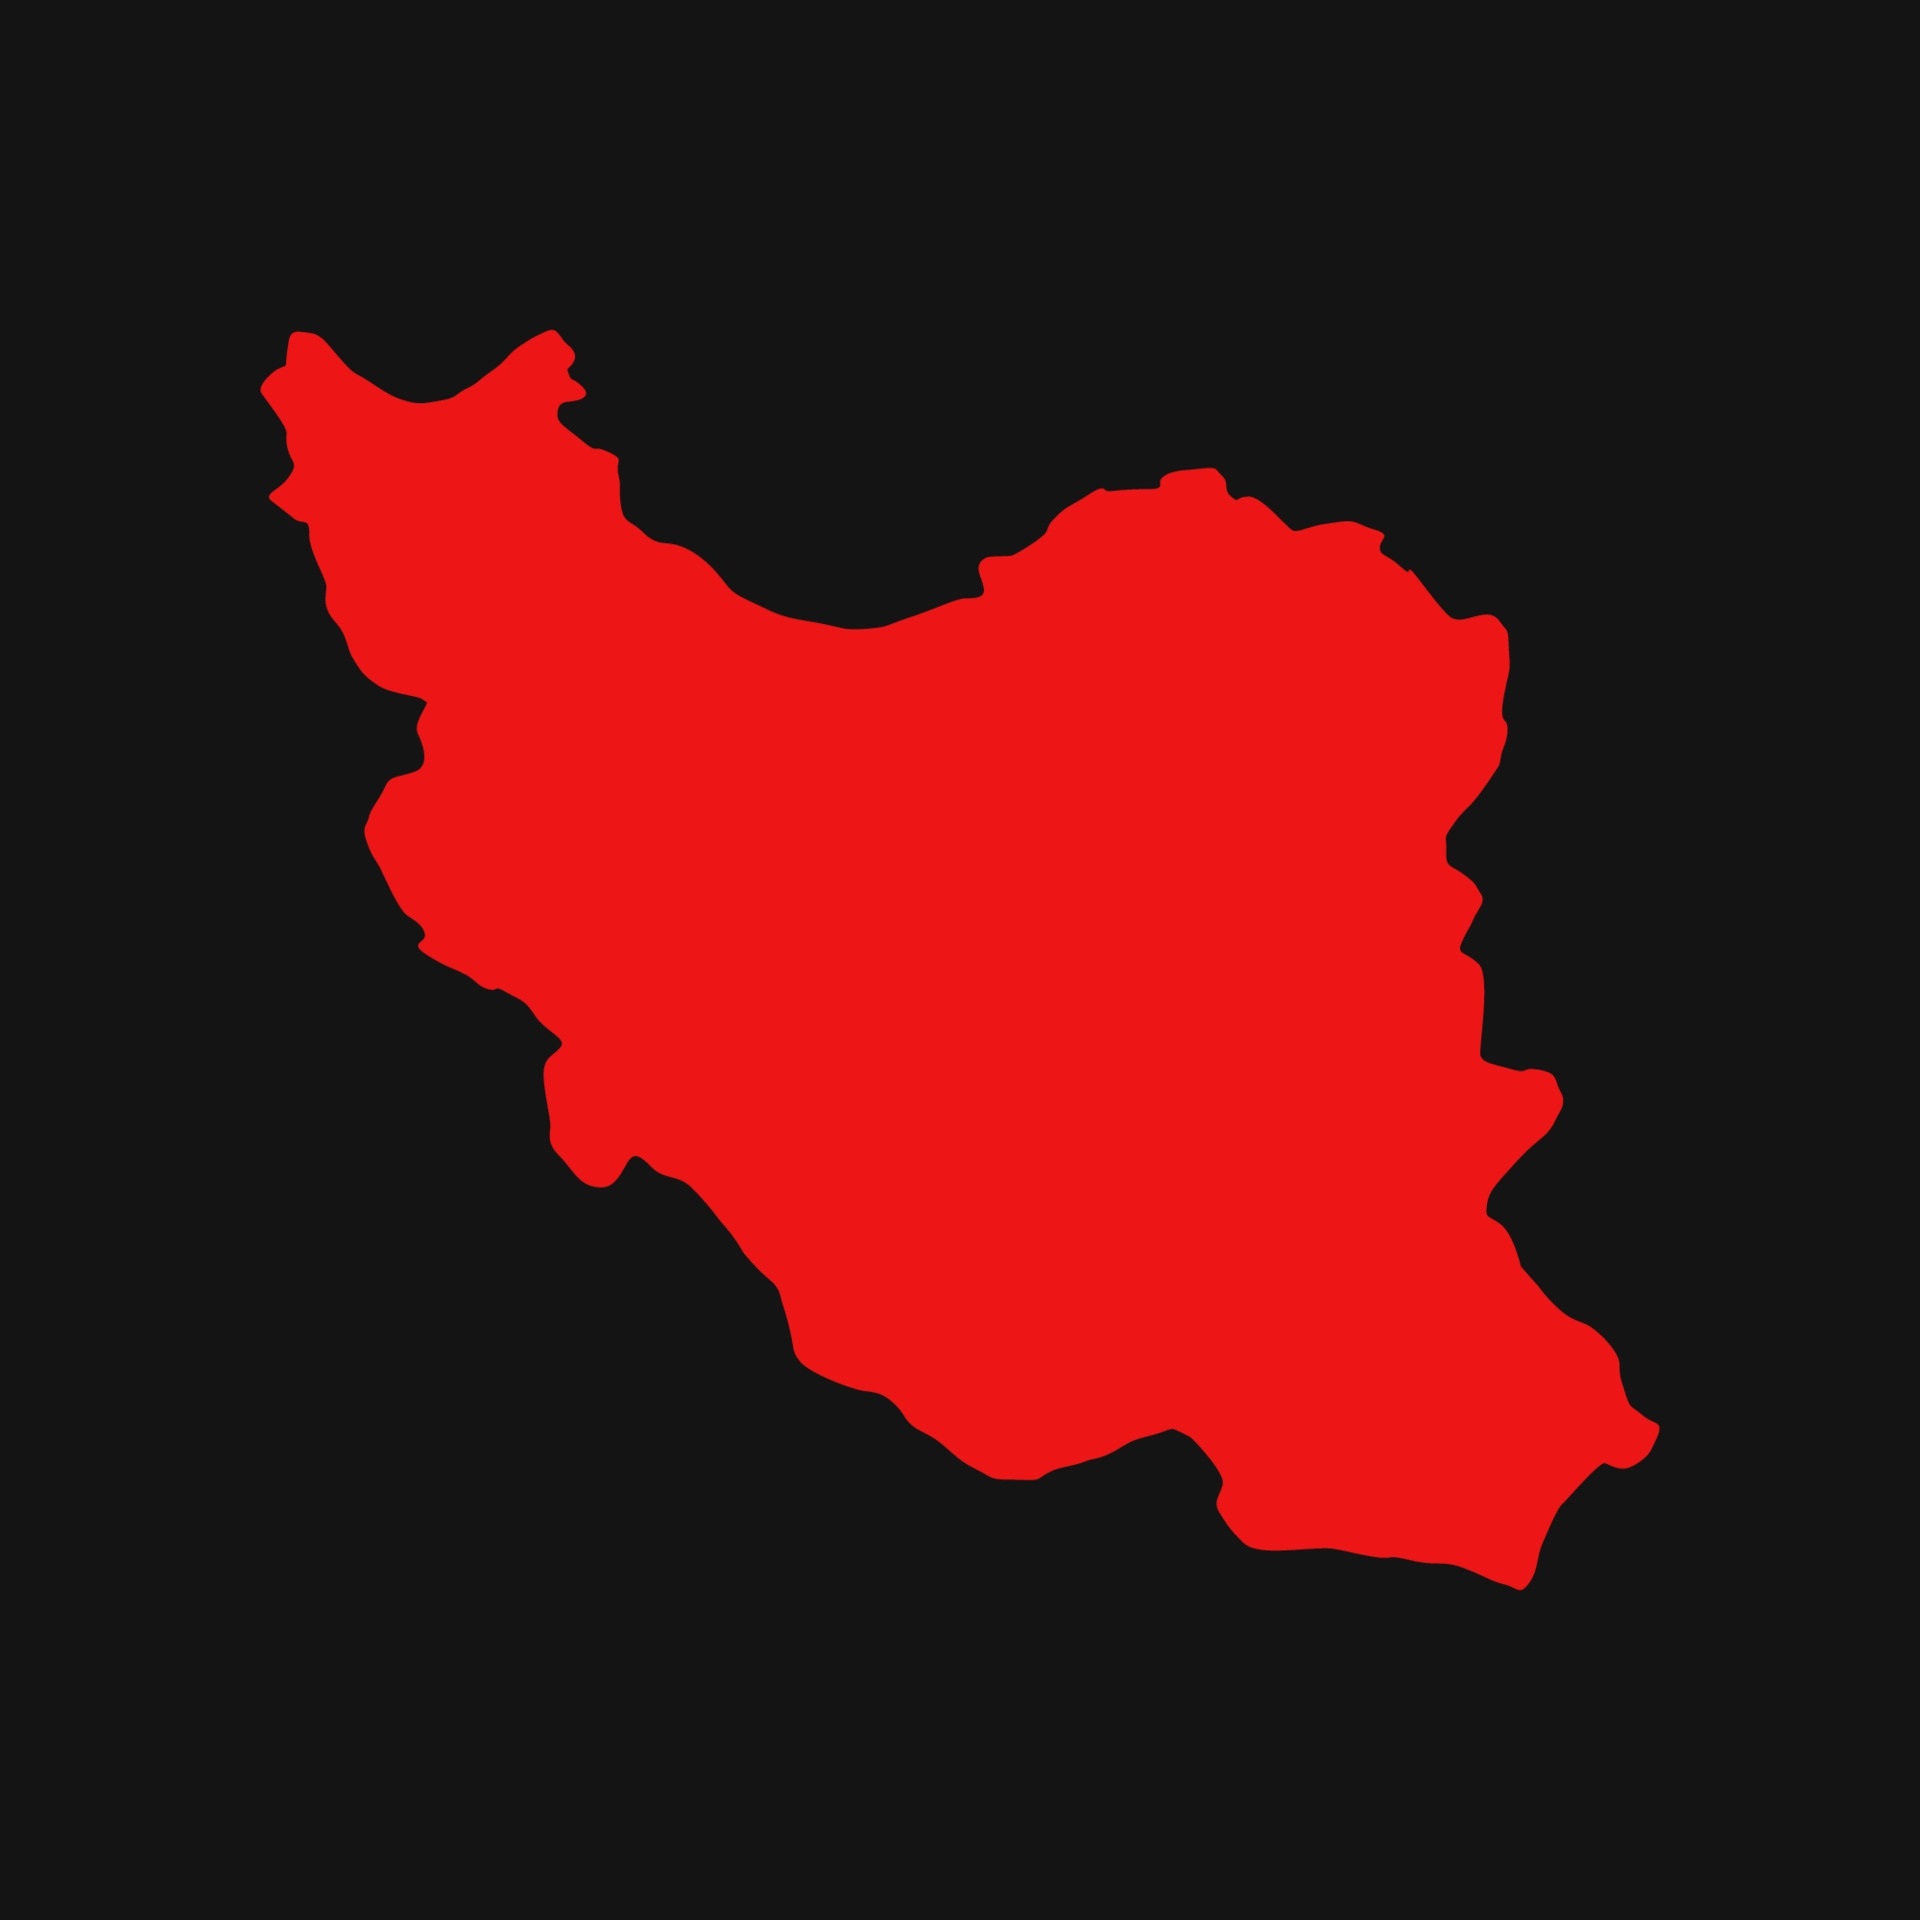 عکس بدون متن از نقشه قرمز ایران برای عکس نوشته